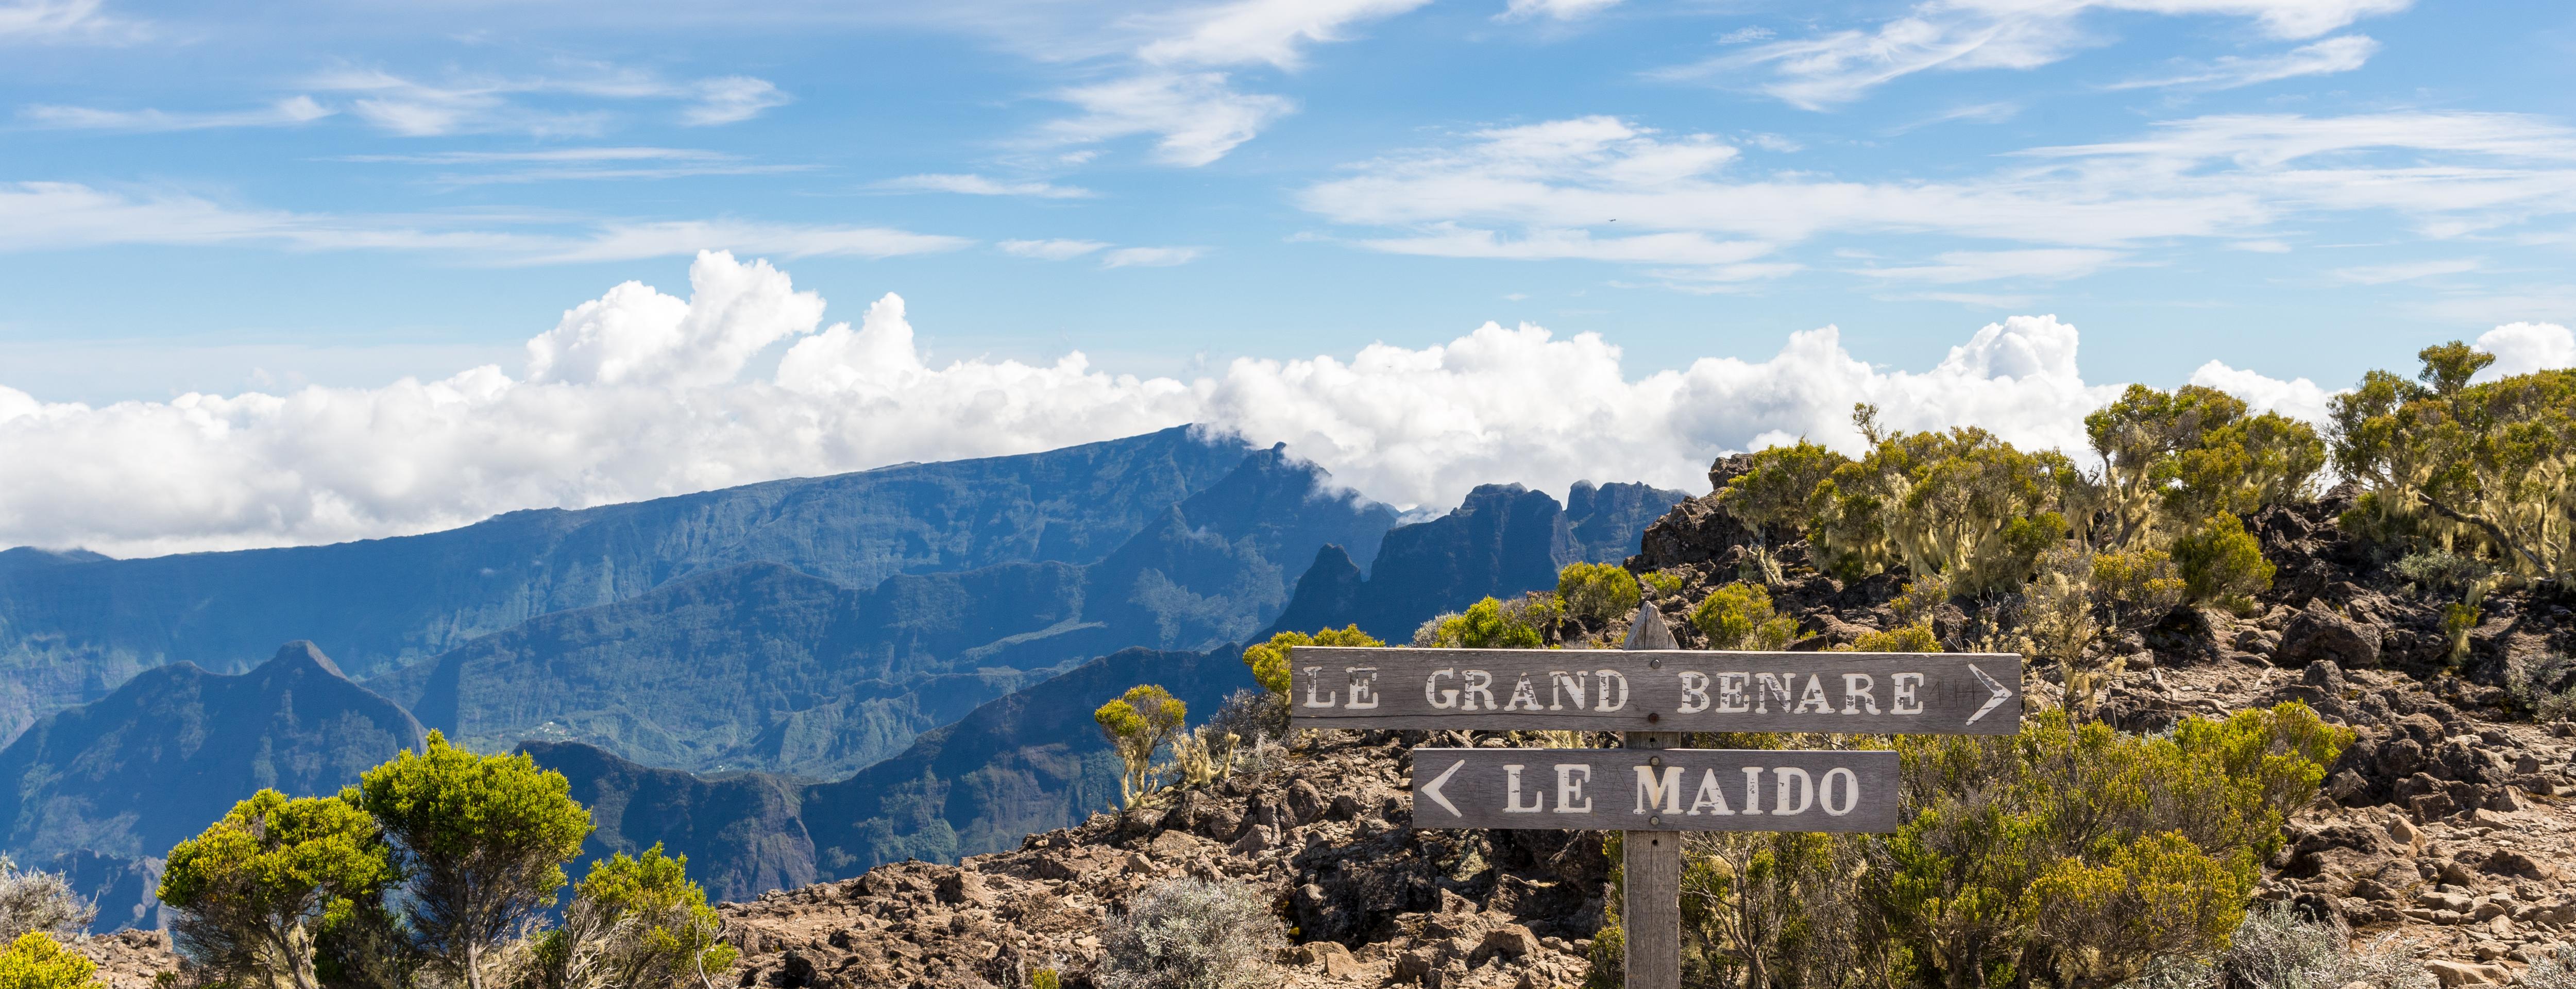 Excursion d’une demi-journée au Piton Maïdo à La Réunion - Transferts inclus